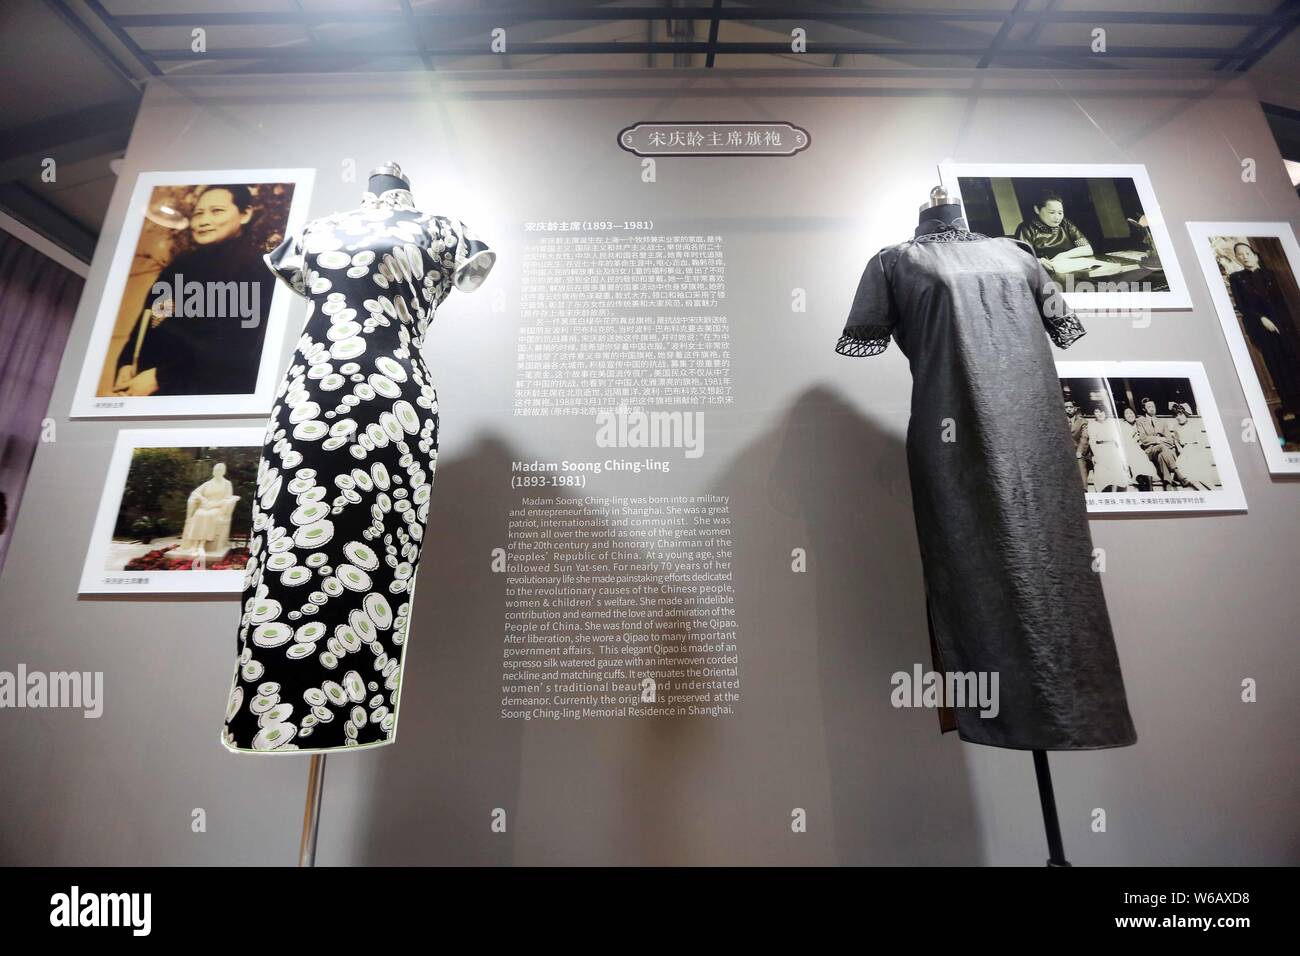 Cheongsams, noto anche come qipao in cinese, indossato da Soong Ching-ling, sono esposti in una mostra del qipao cheongsam () indossato dal famoso brano Foto Stock